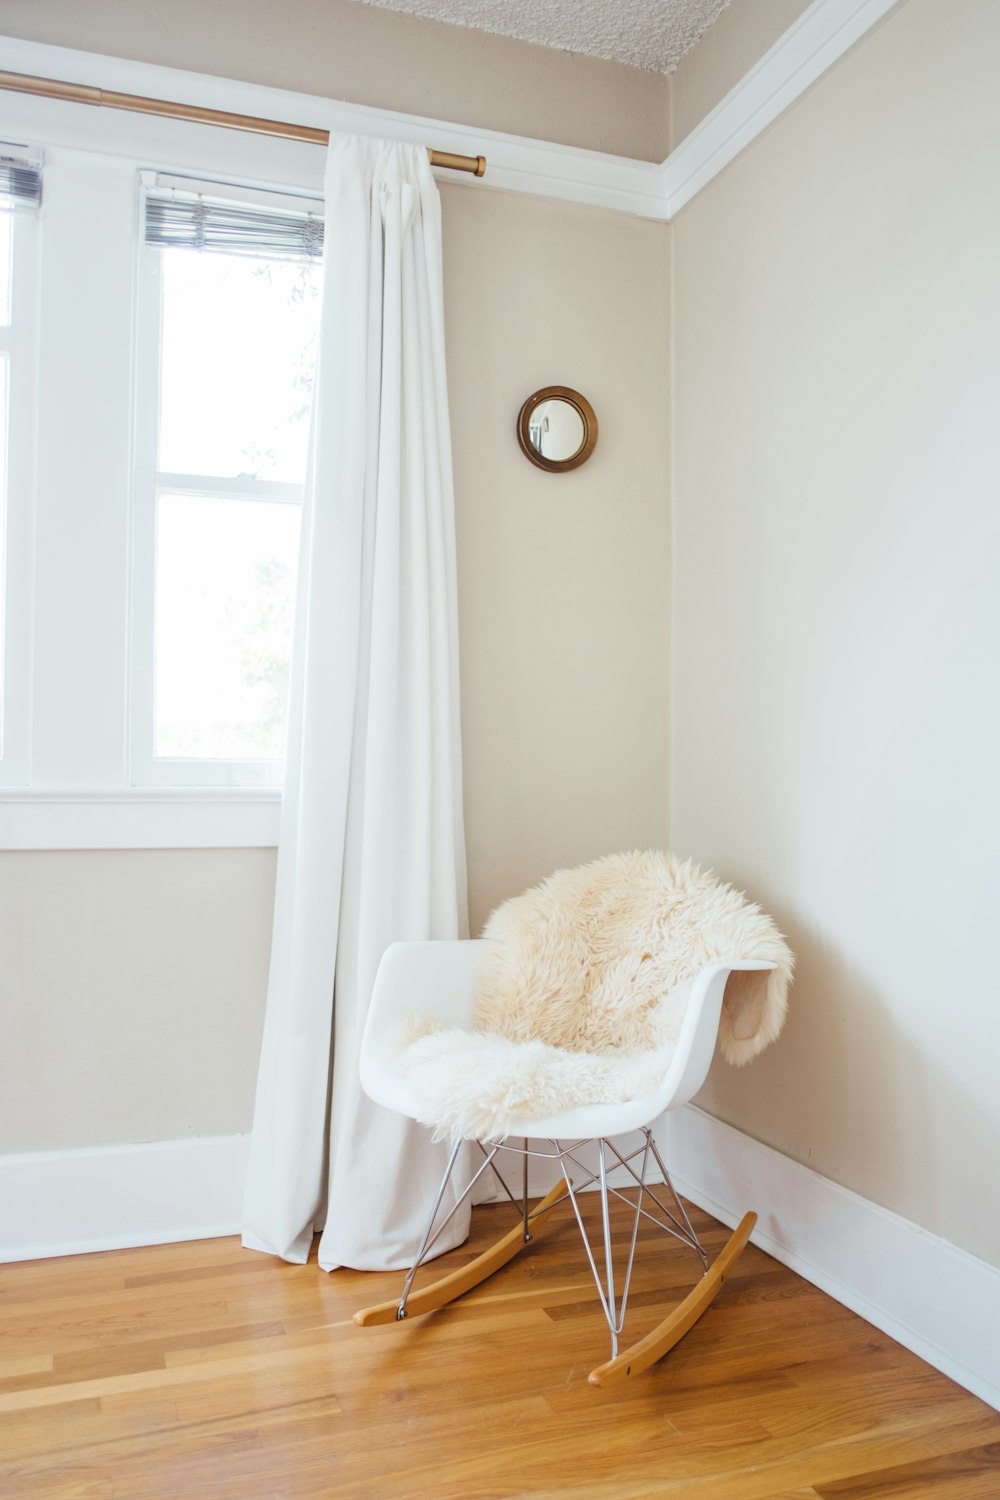 Mecedora blanca y marrón cerca de la pared pintada de blanco y cortina de ventana blanca